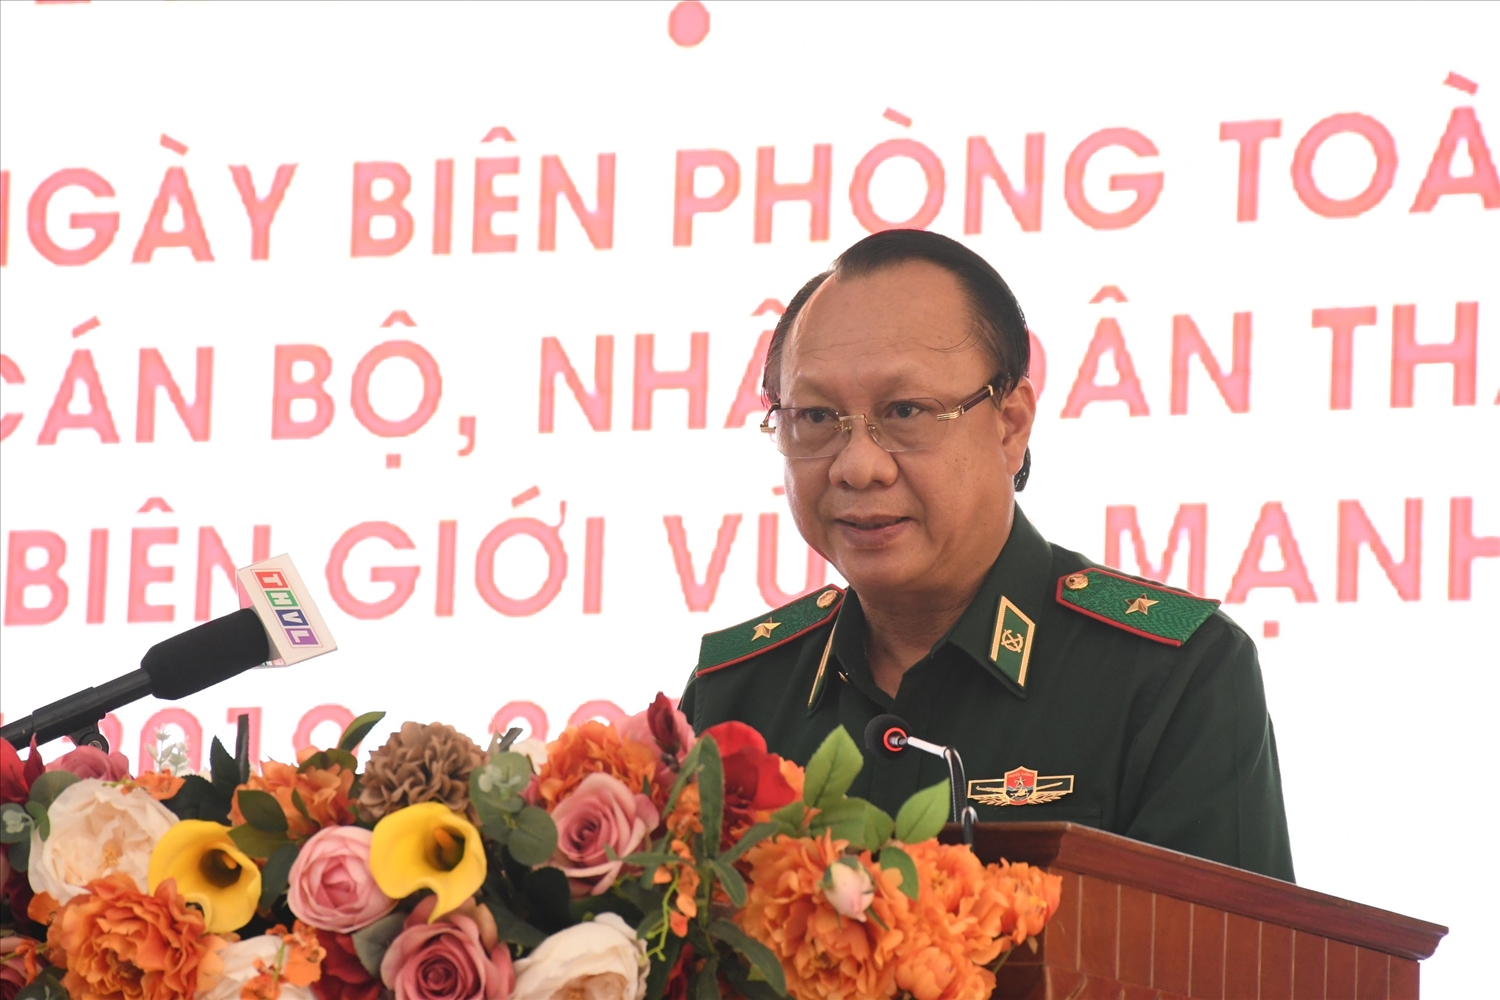 Thiếu tướng Nguyễn Hoài Phương - Phó Tư Lệnh BĐBP phát biểu tại Hội nghị 